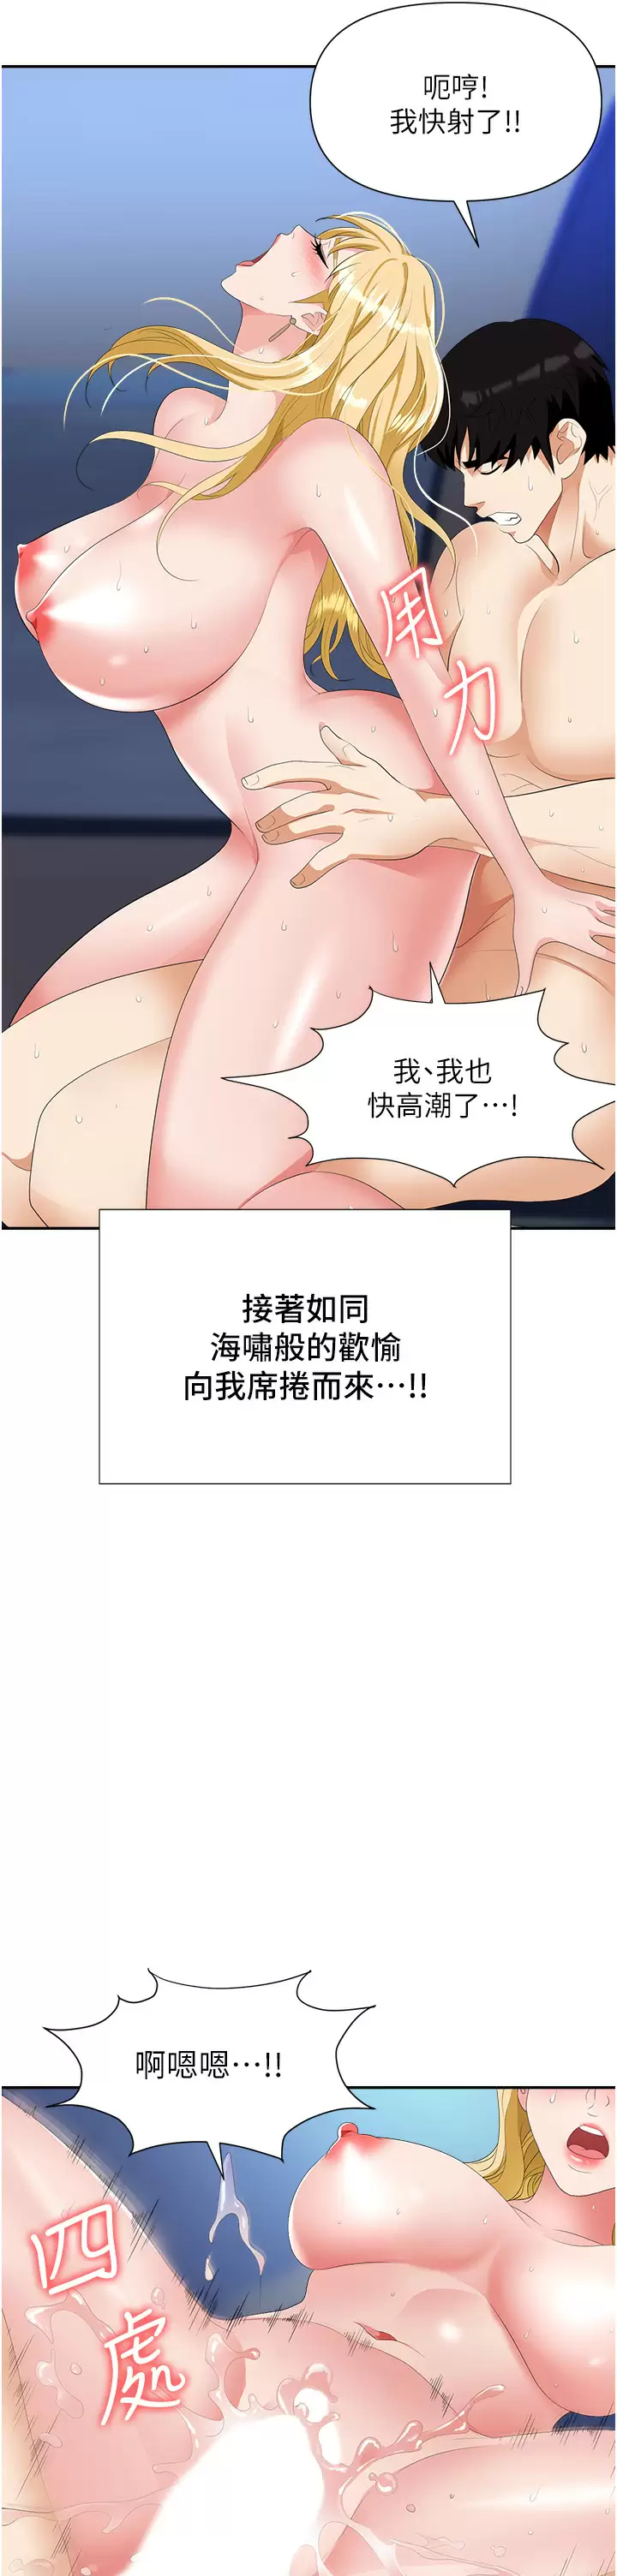 韩国污漫画 職場陷阱 第20话 帐篷活春宫 44